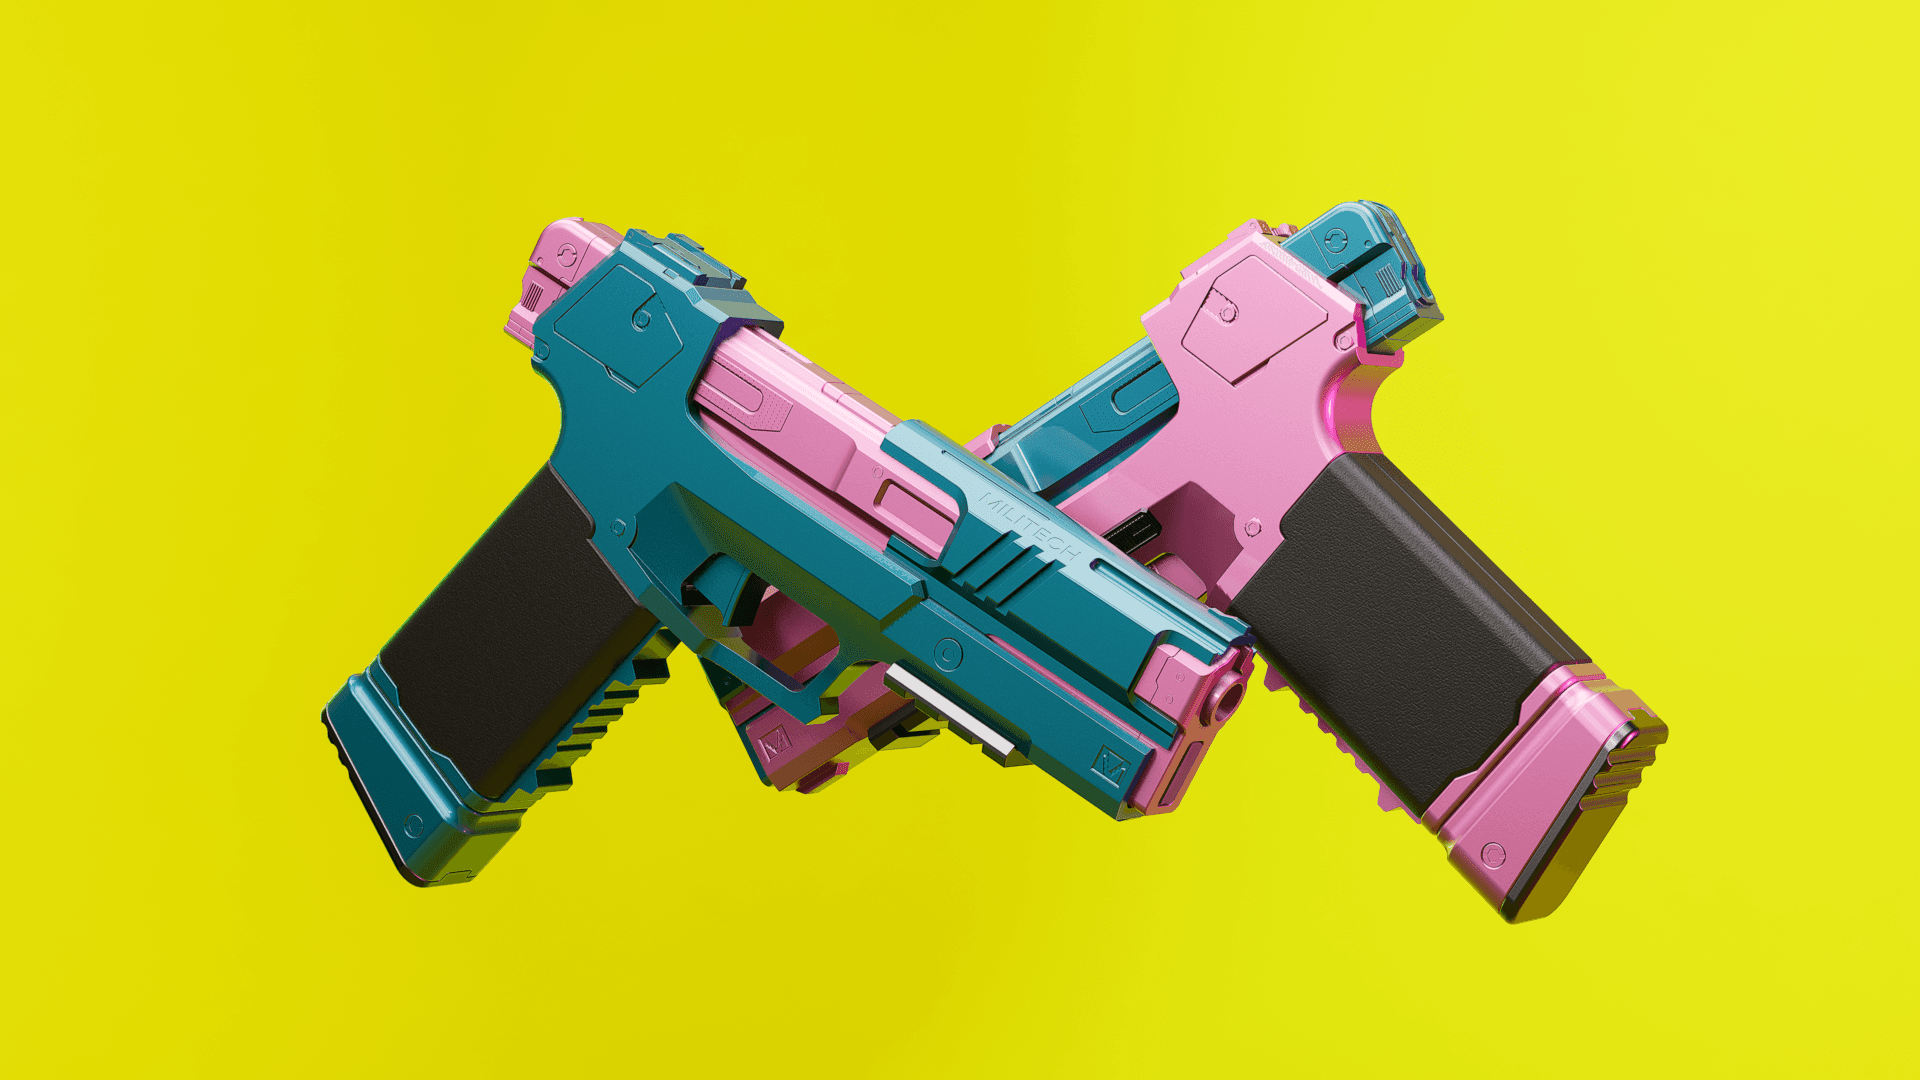 CYBERPUNK EDGERUNNERS REBECCA OMAHA MILITECH GUN 3D FILES 3d model